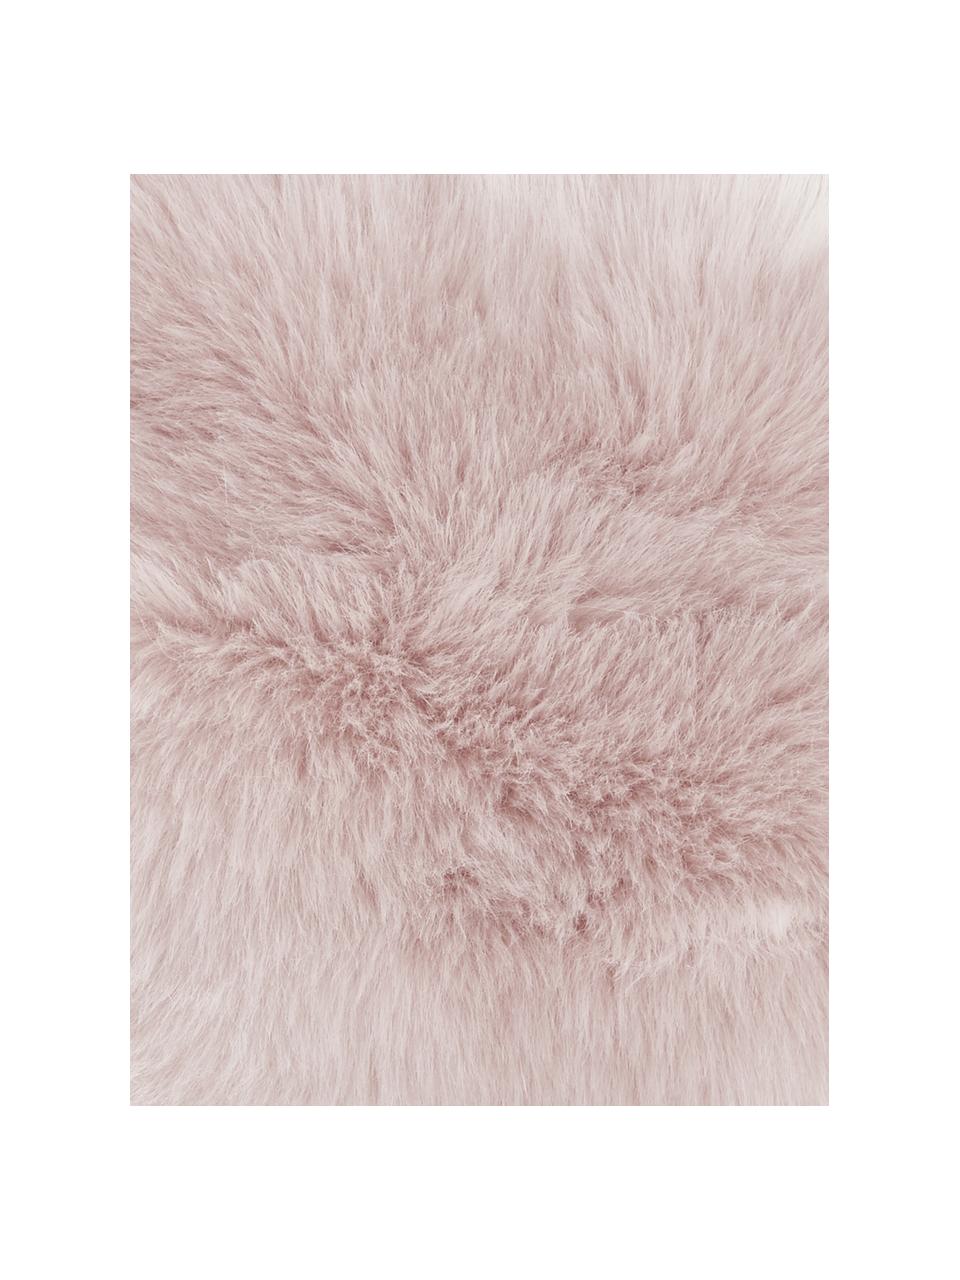 Poszewka na poduszkę ze sztucznego futra Mathilde, proste włosie, Blady różowy, S 30 x D 50 cm